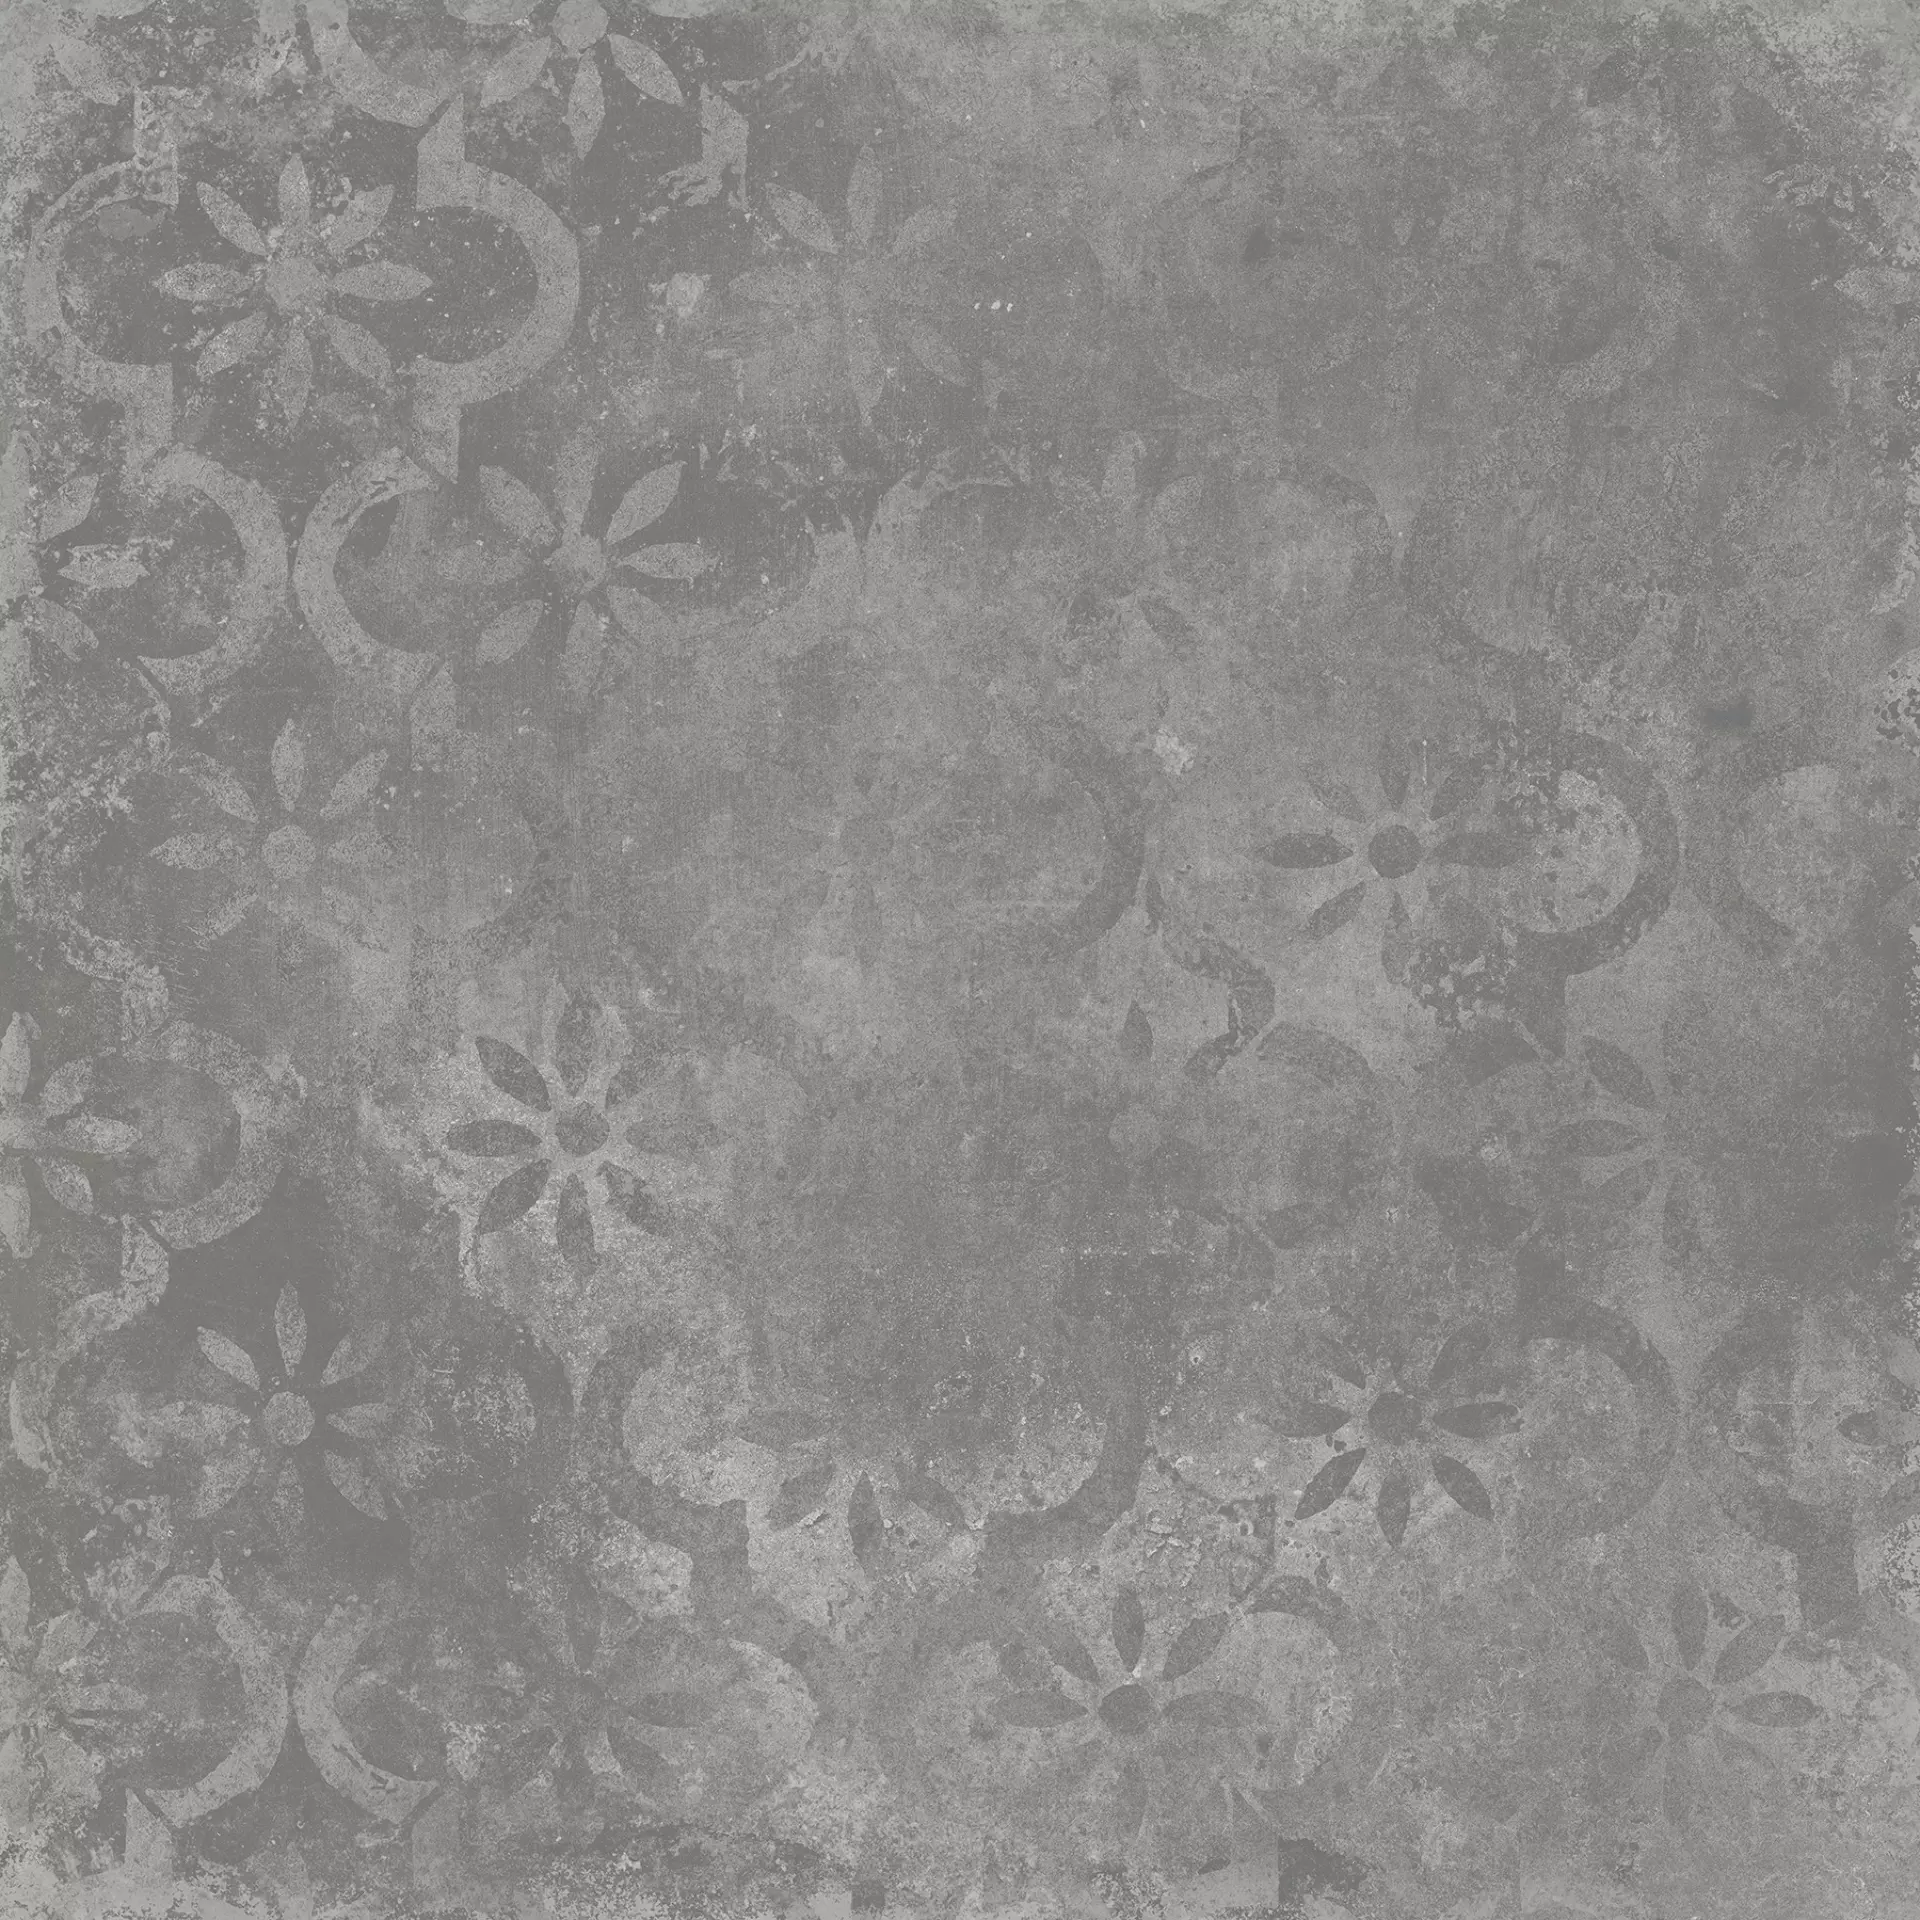 Tagina Cottotagina Grey Naturale Decor Stencil 116038 90x90cm 10mm